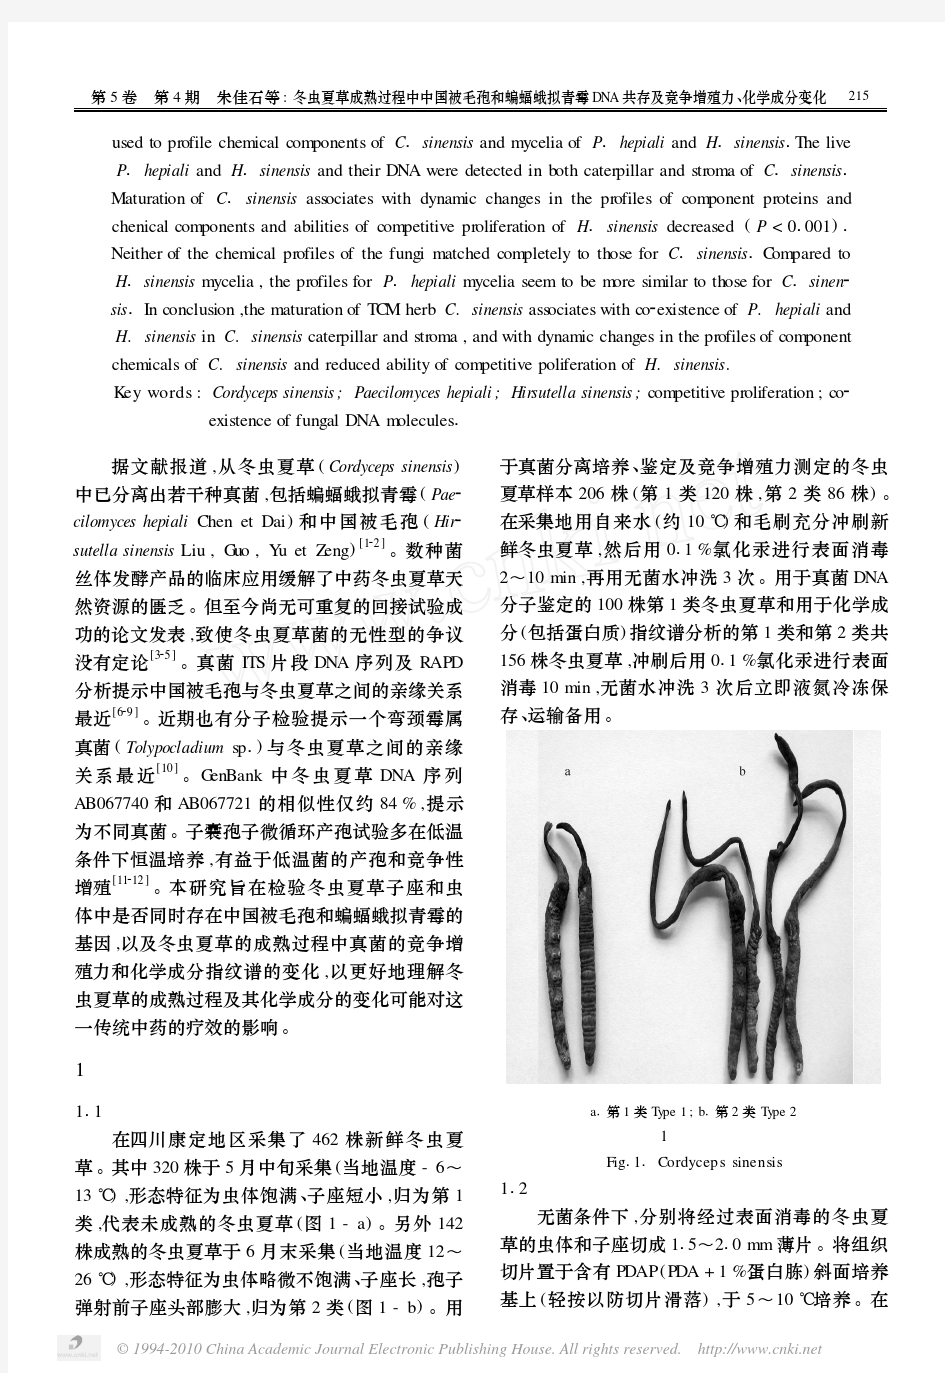 _冬虫夏草成熟过程中中国被毛孢和蝙蝠蛾拟青霉DNA共存及竞争增殖力、化学成分变化 (1)